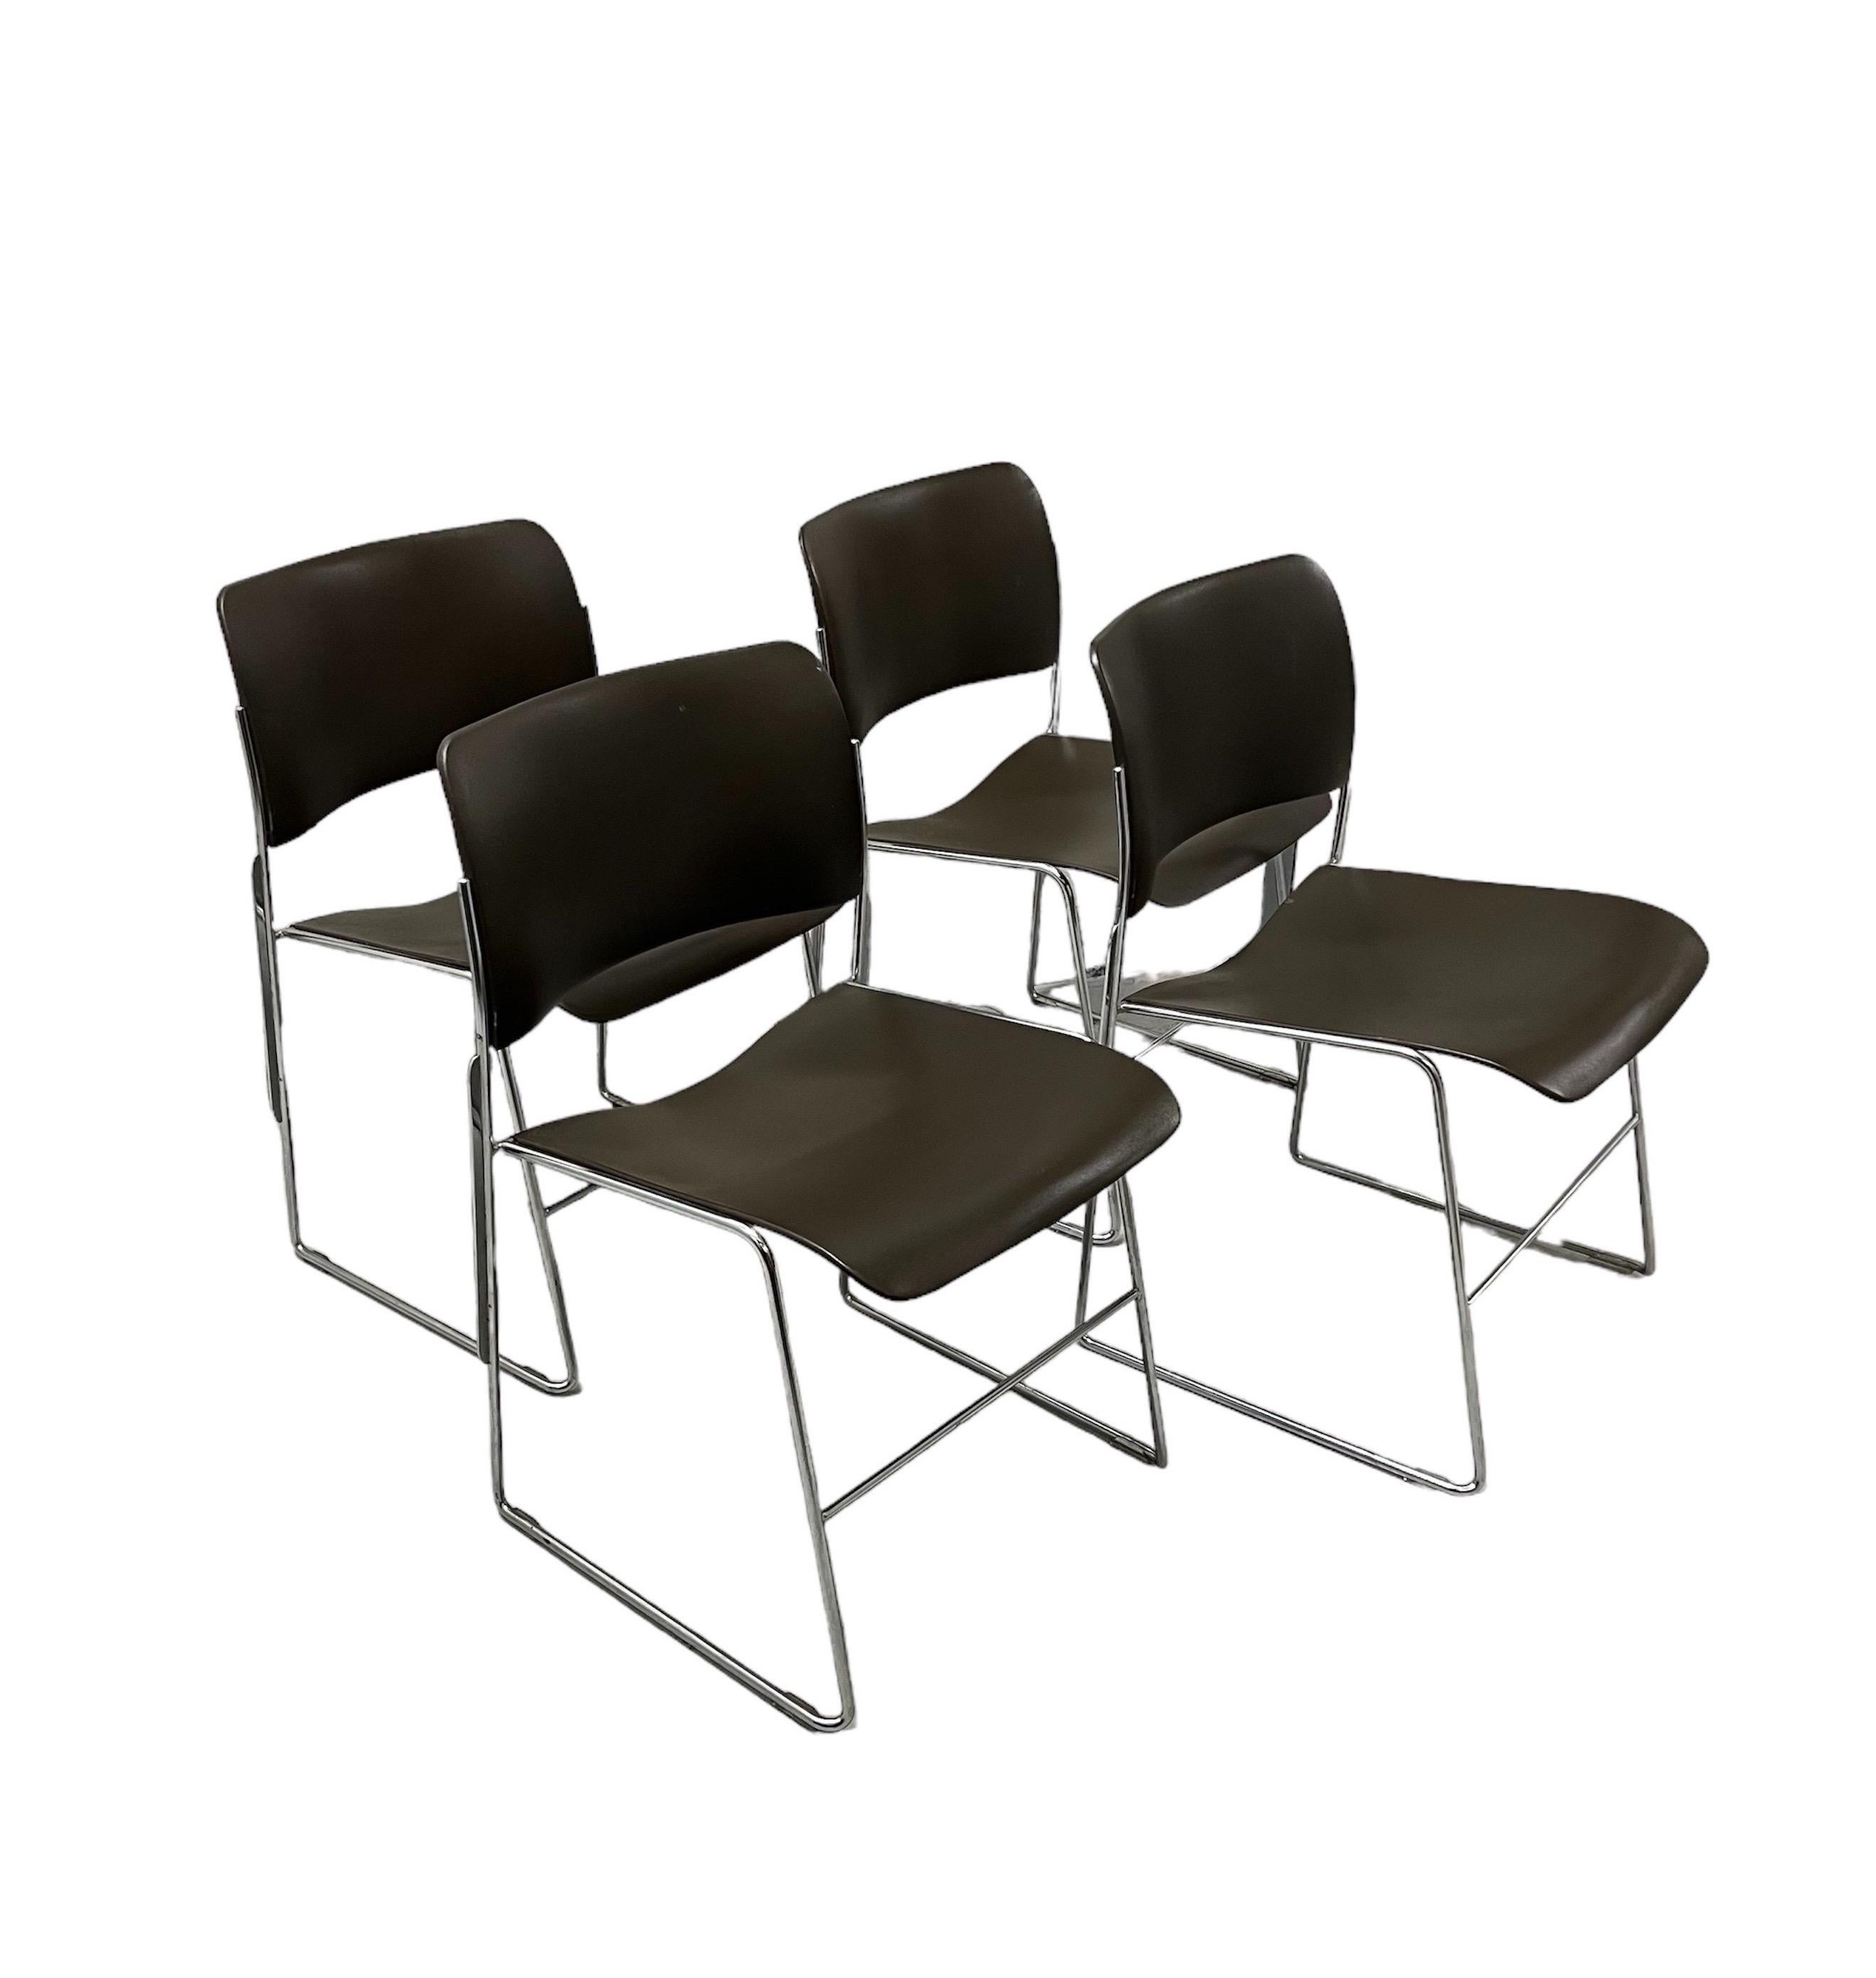 Satz von 4 stapelbaren 40/4 Stühlen von David Rowland in Dunkelbraun
Der als erster stapelbarer Stuhl anerkannte 40/4 Chair ist eine Meisterleistung in Sachen Design, Eleganz und Ergonomie; er umfasst die gesamte Bandbreite der Multifunktionalität,